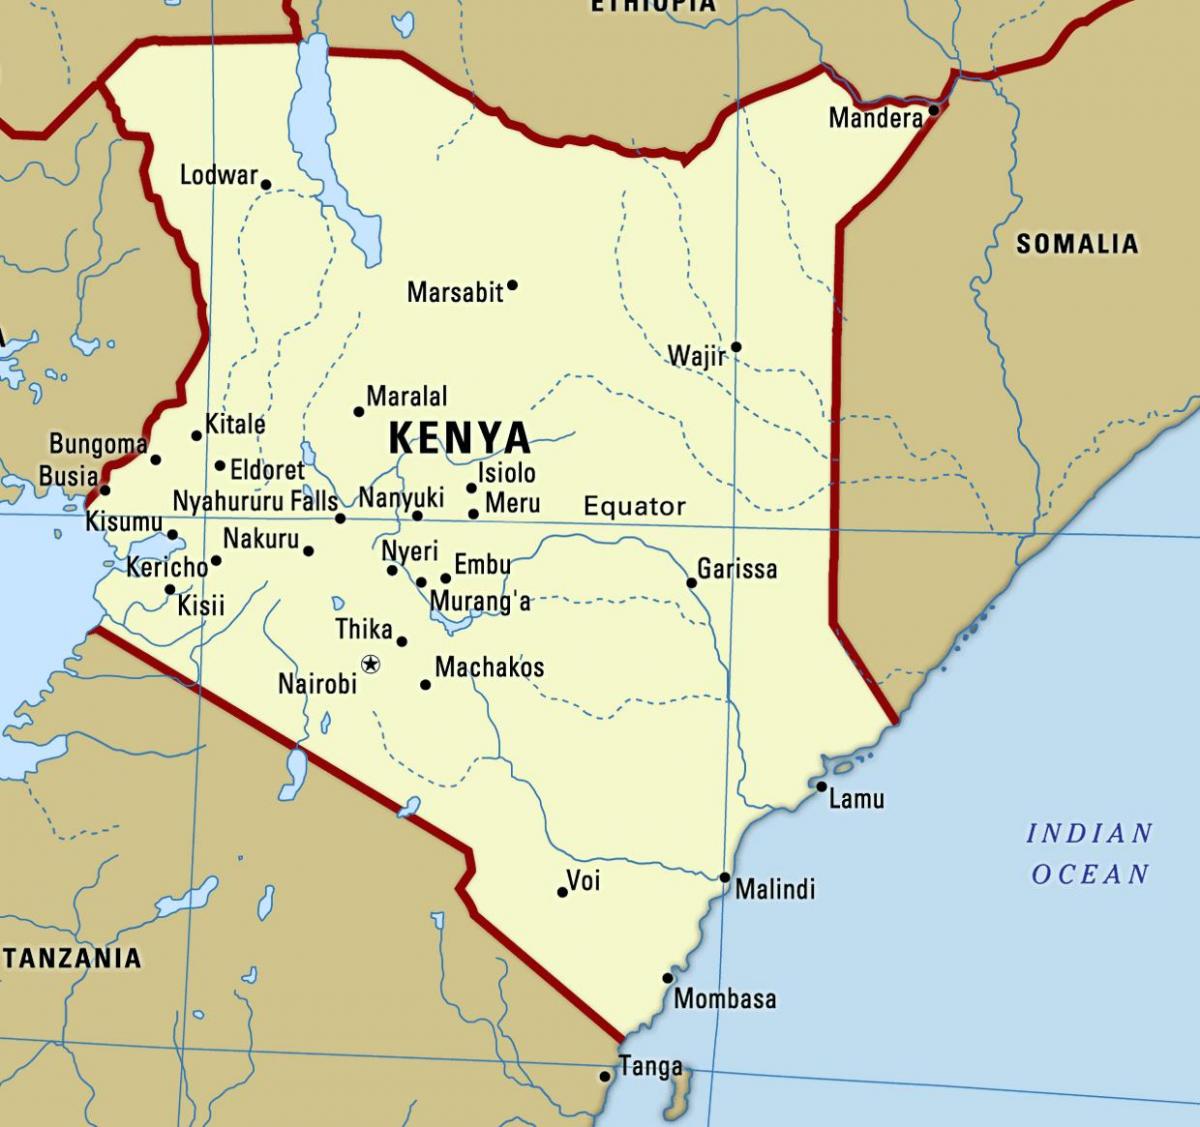 지도와 함께 케냐의 도시